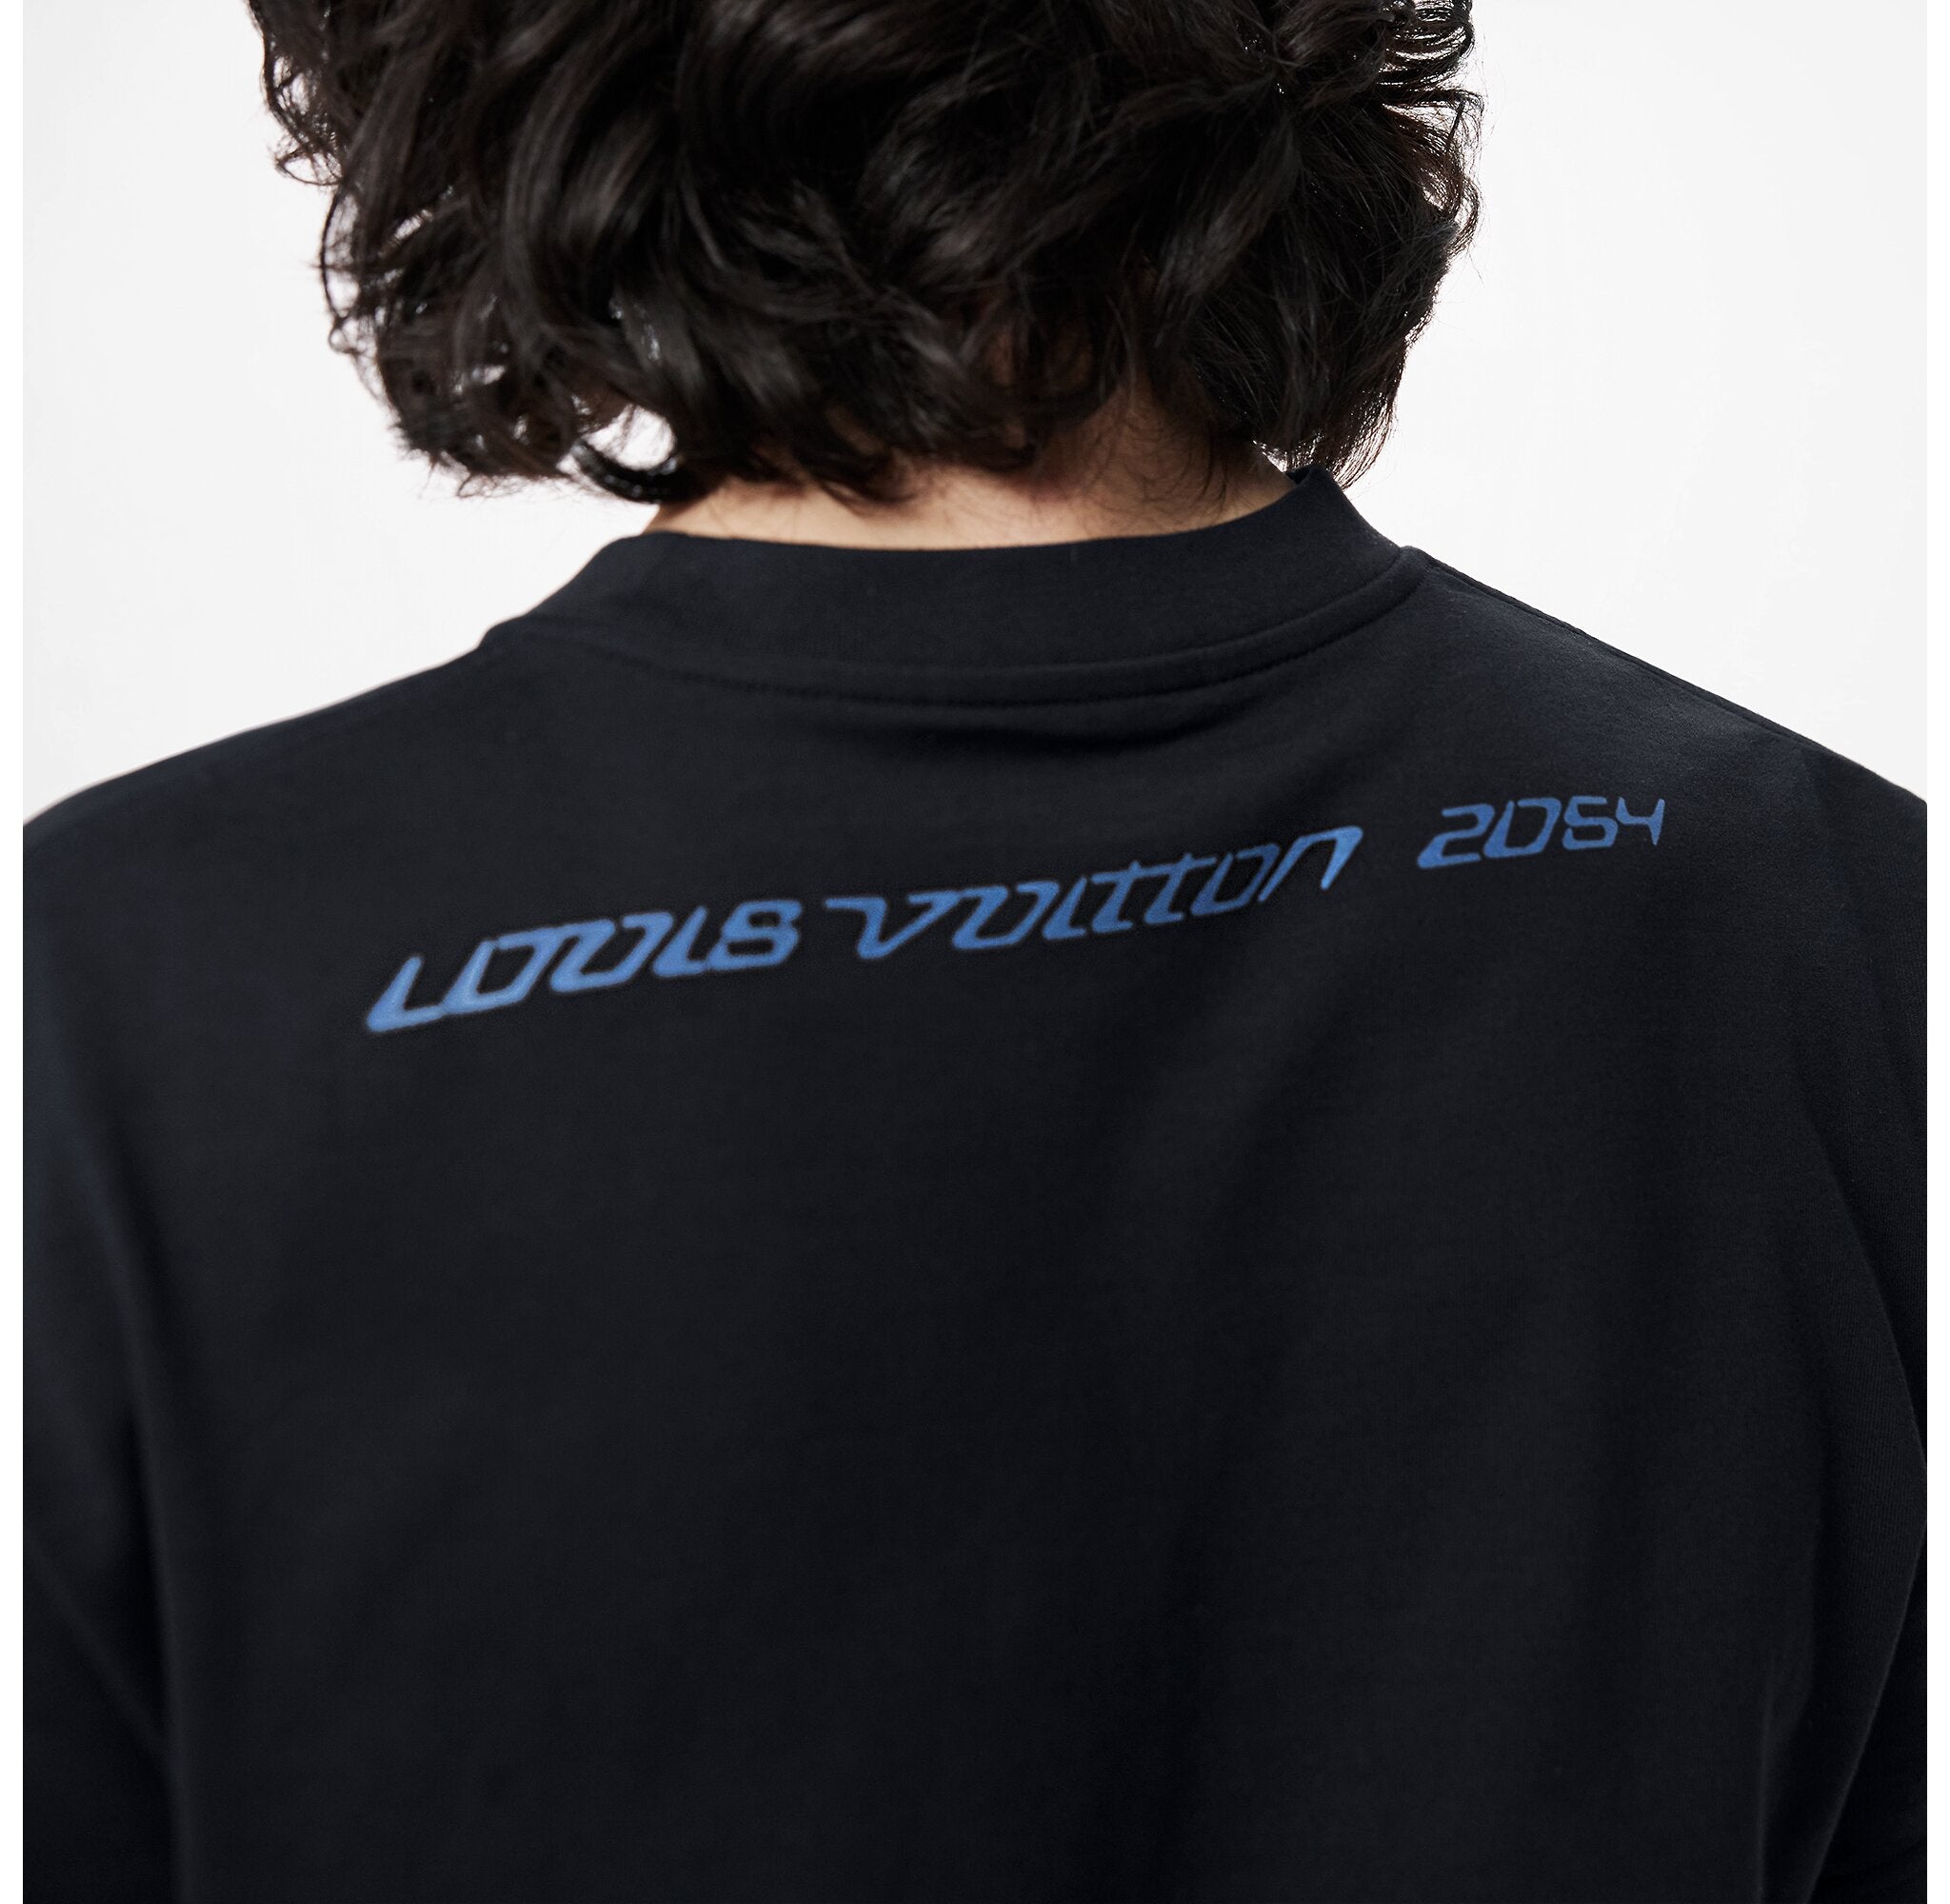 LOUIS VUITTON 2054 SIGNATURE BLACK T-SHIRT